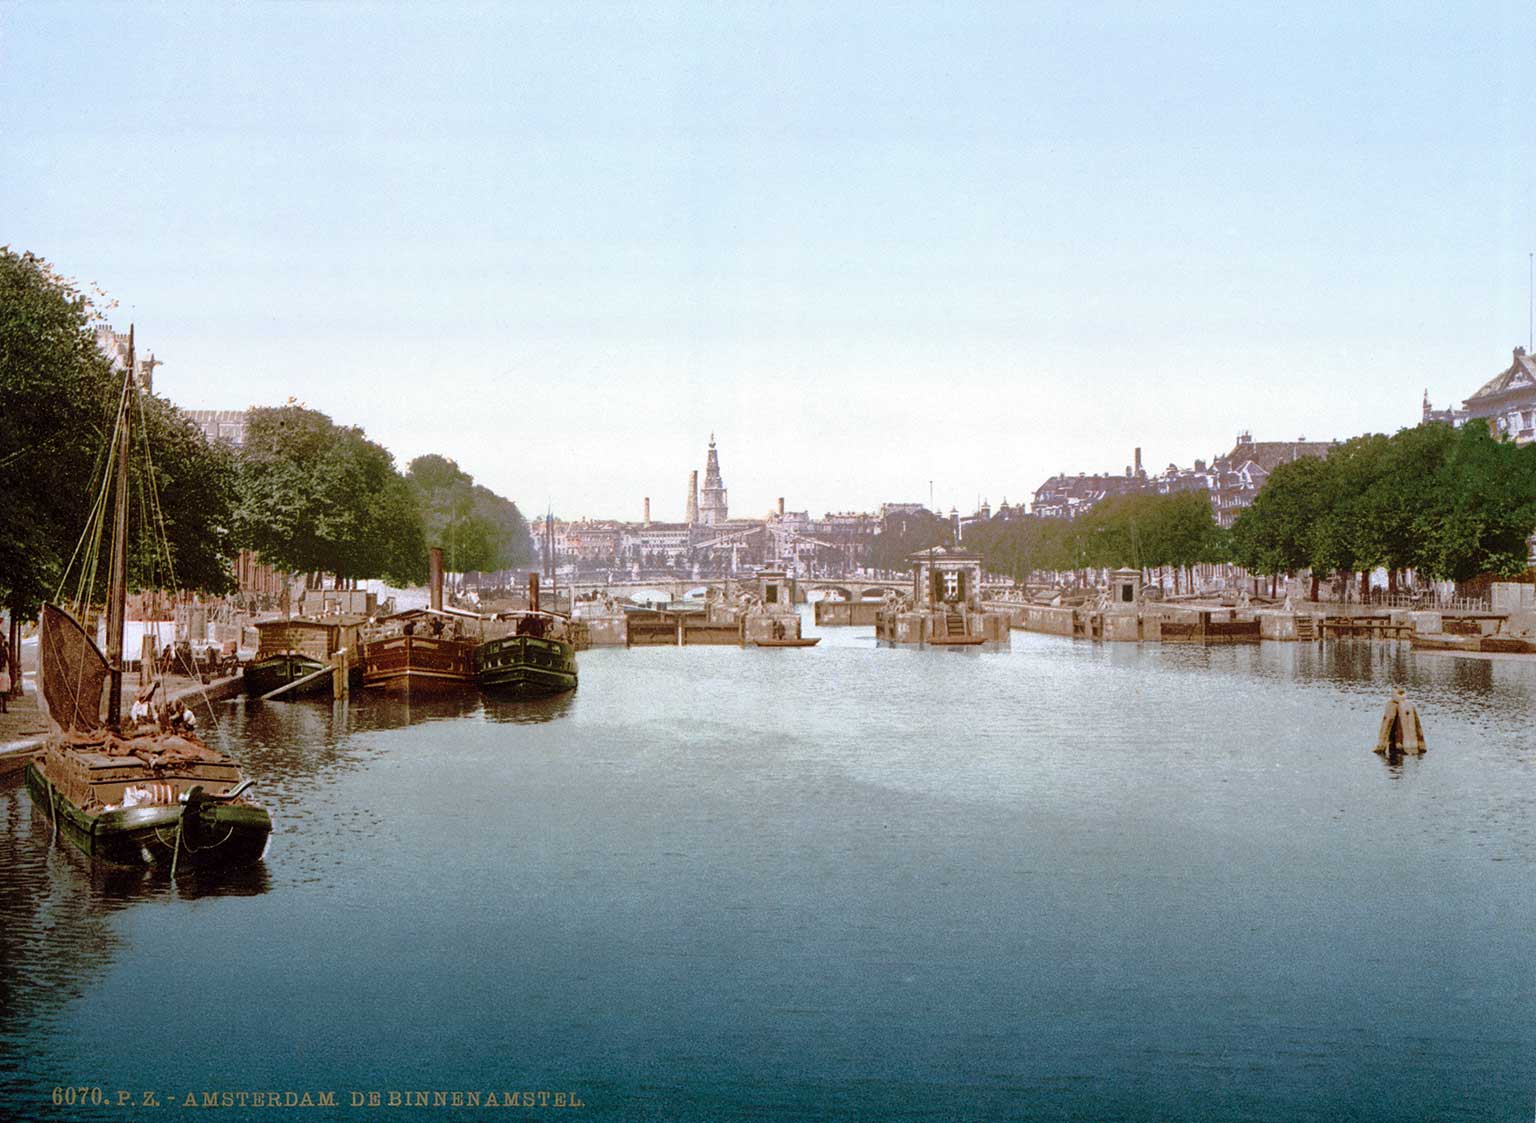 Amstel Locks, Amsterdam, between 1890 and 1900